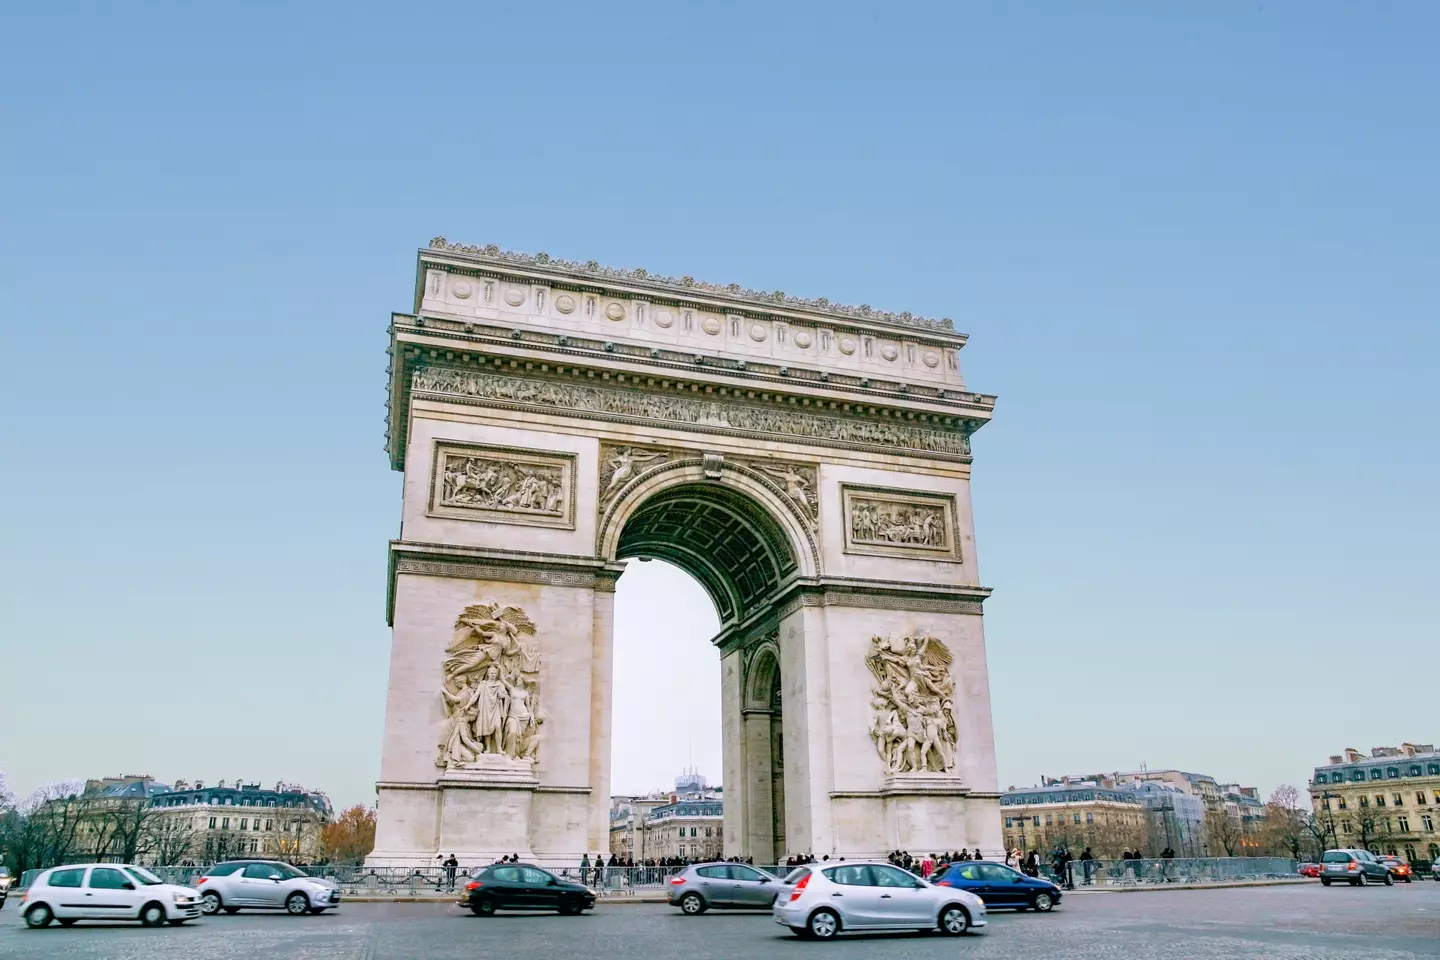 The gaping hole could now fit Paris' Arc de Triomphe.